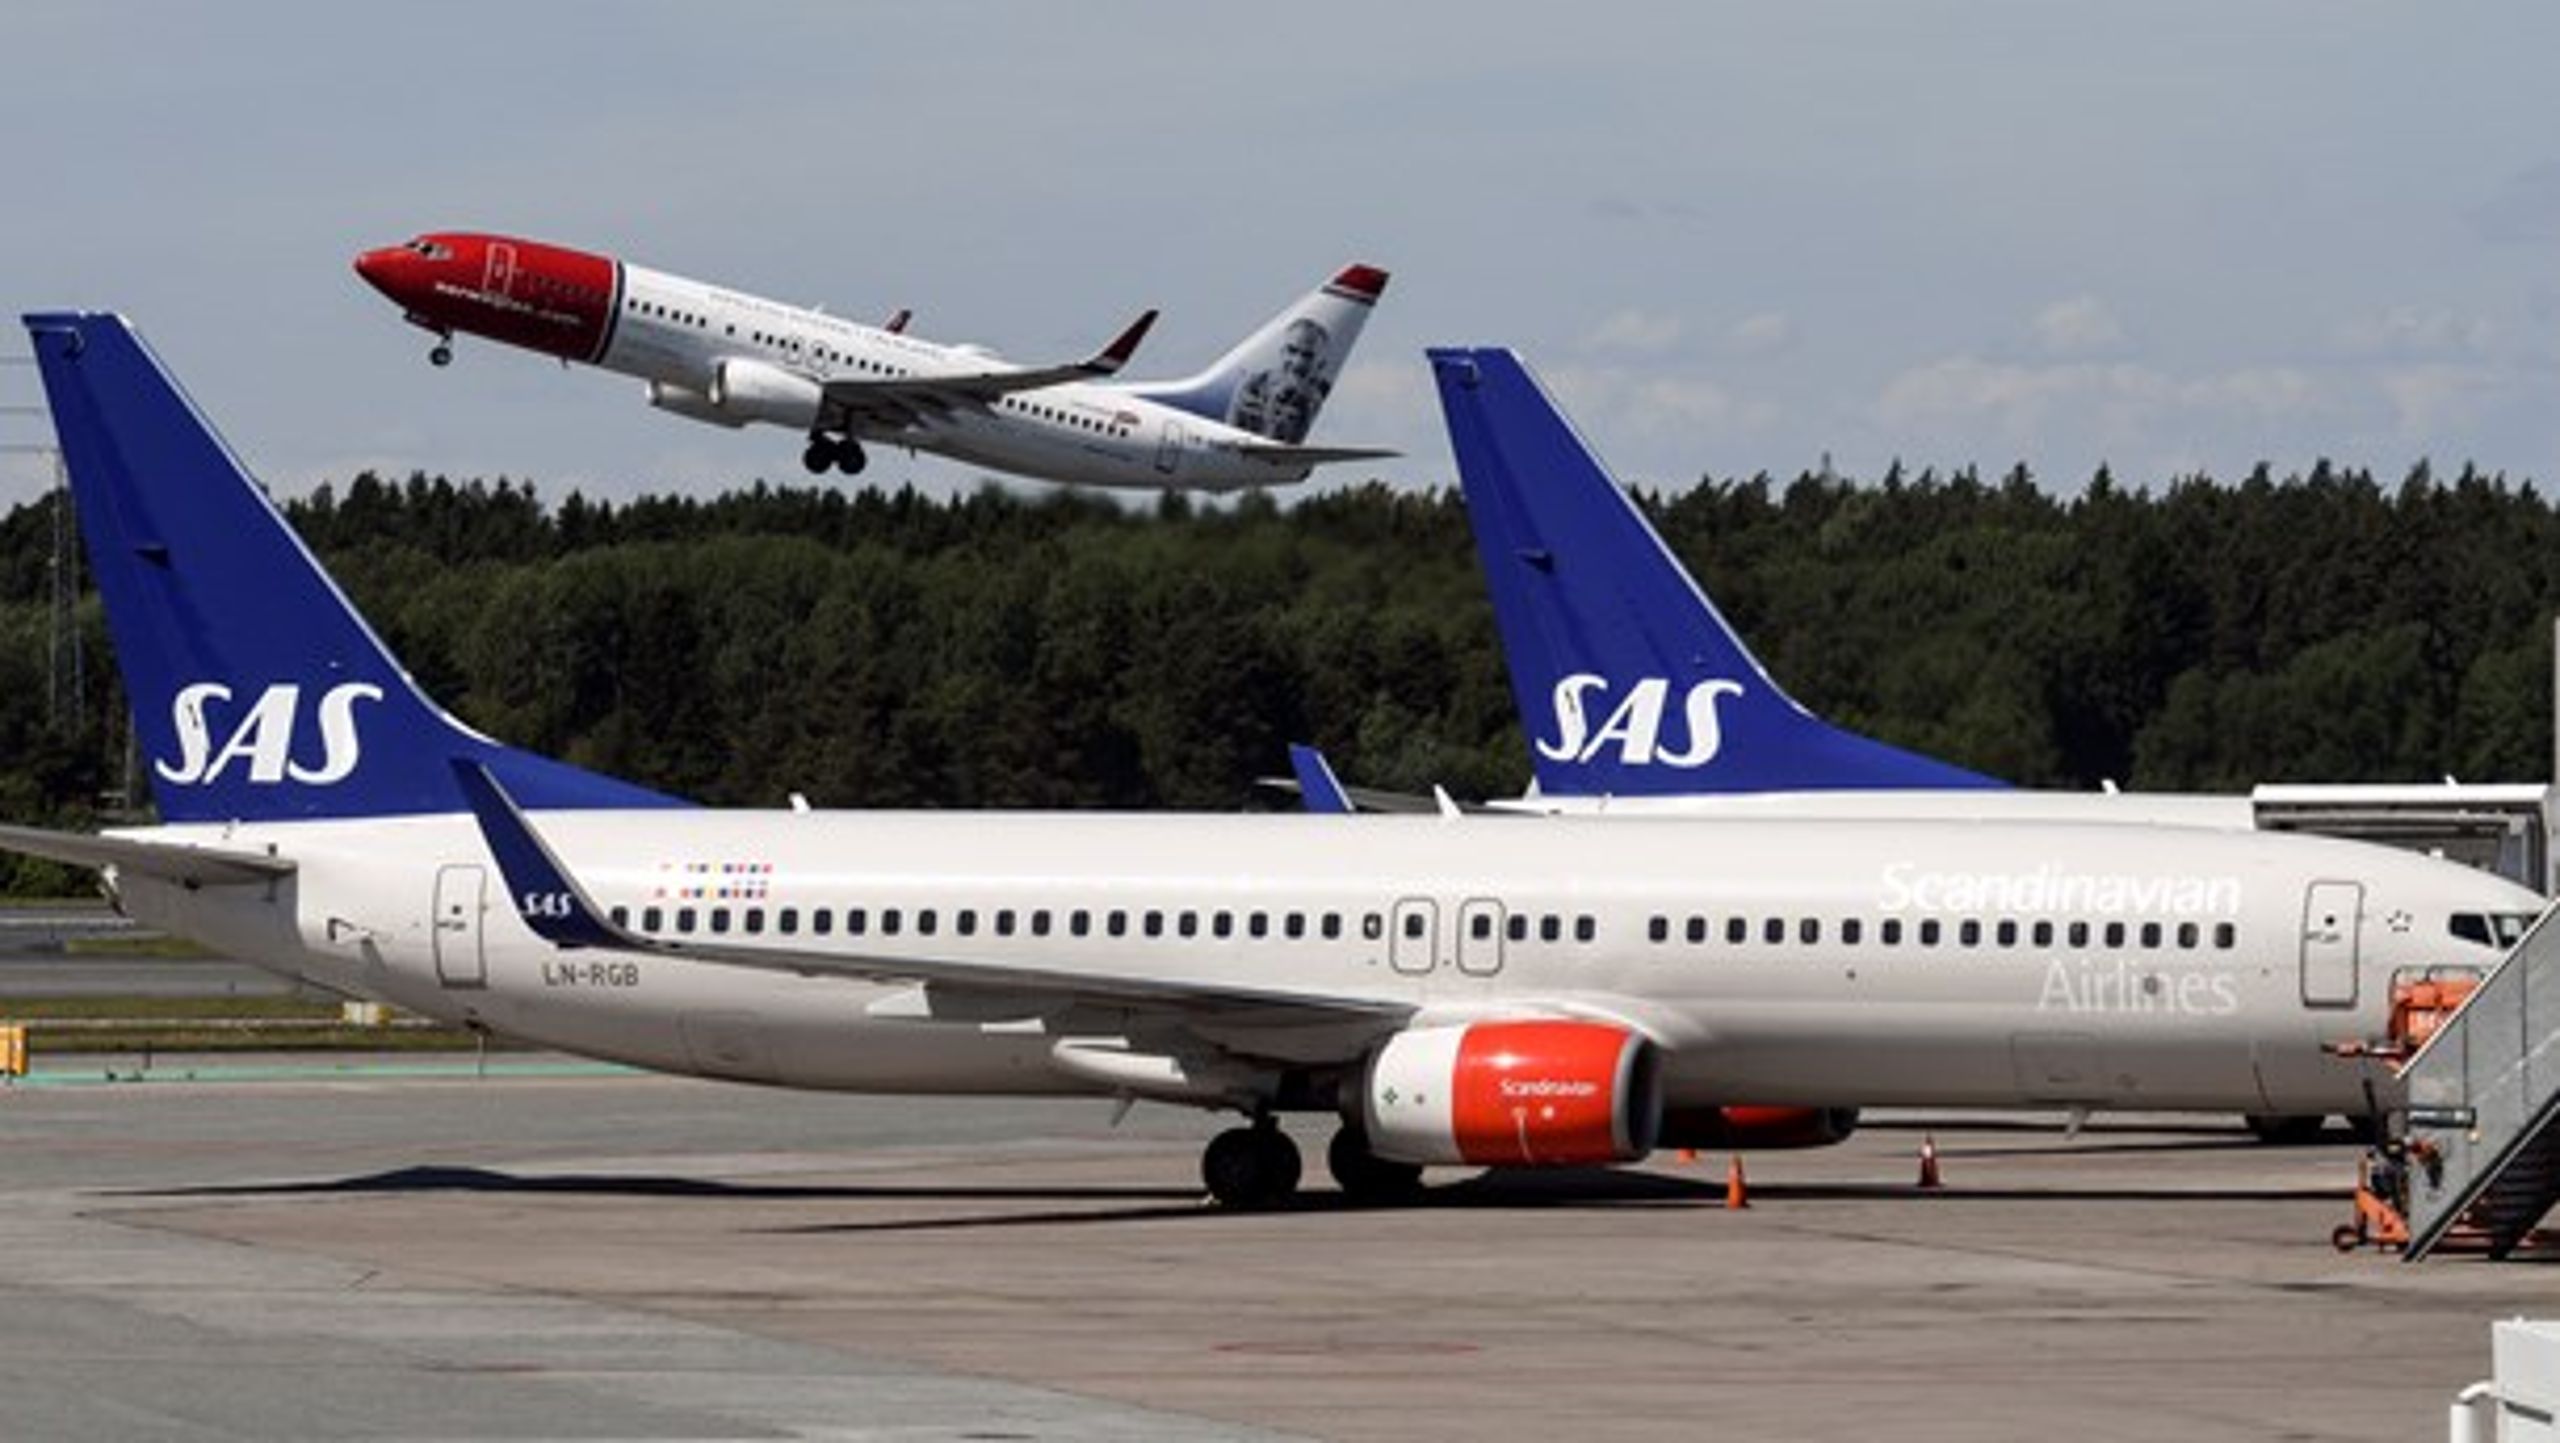 "Vi behöver en konsolidering av inrikesflyget där Bromma flygplats läggs ner samtidigt som vi gör en översyn kring vilka inrikesflyg Sverige verkligen behöver."